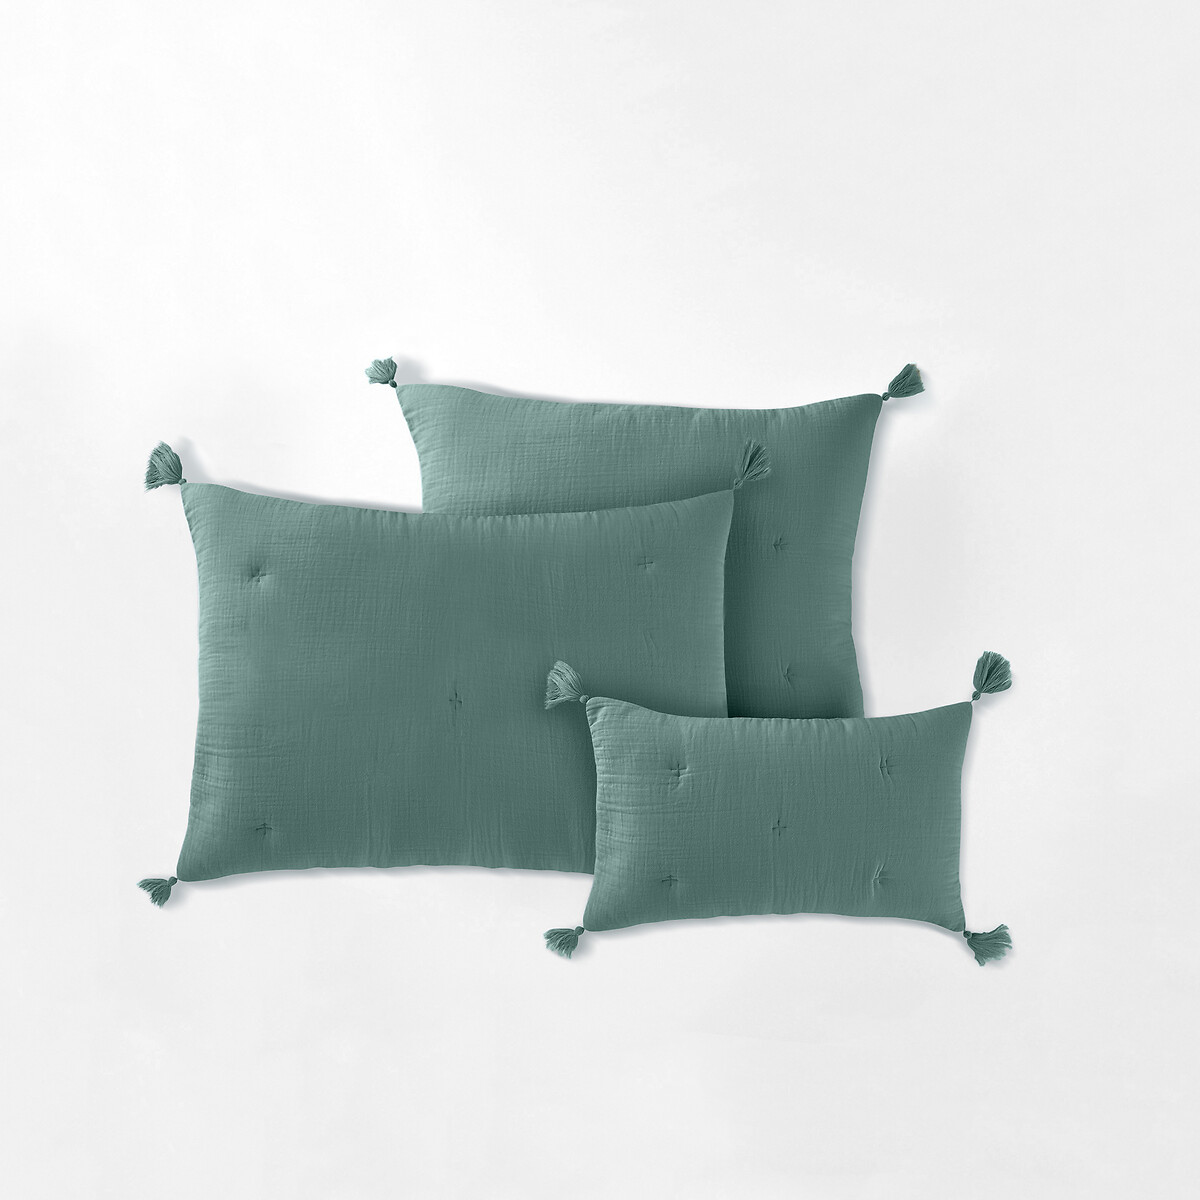 Чехол LA REDOUTE INTERIEURS На подушку из газового хлопка Kumla 50 x 30 см зеленый, размер 50 x 30 см - фото 1